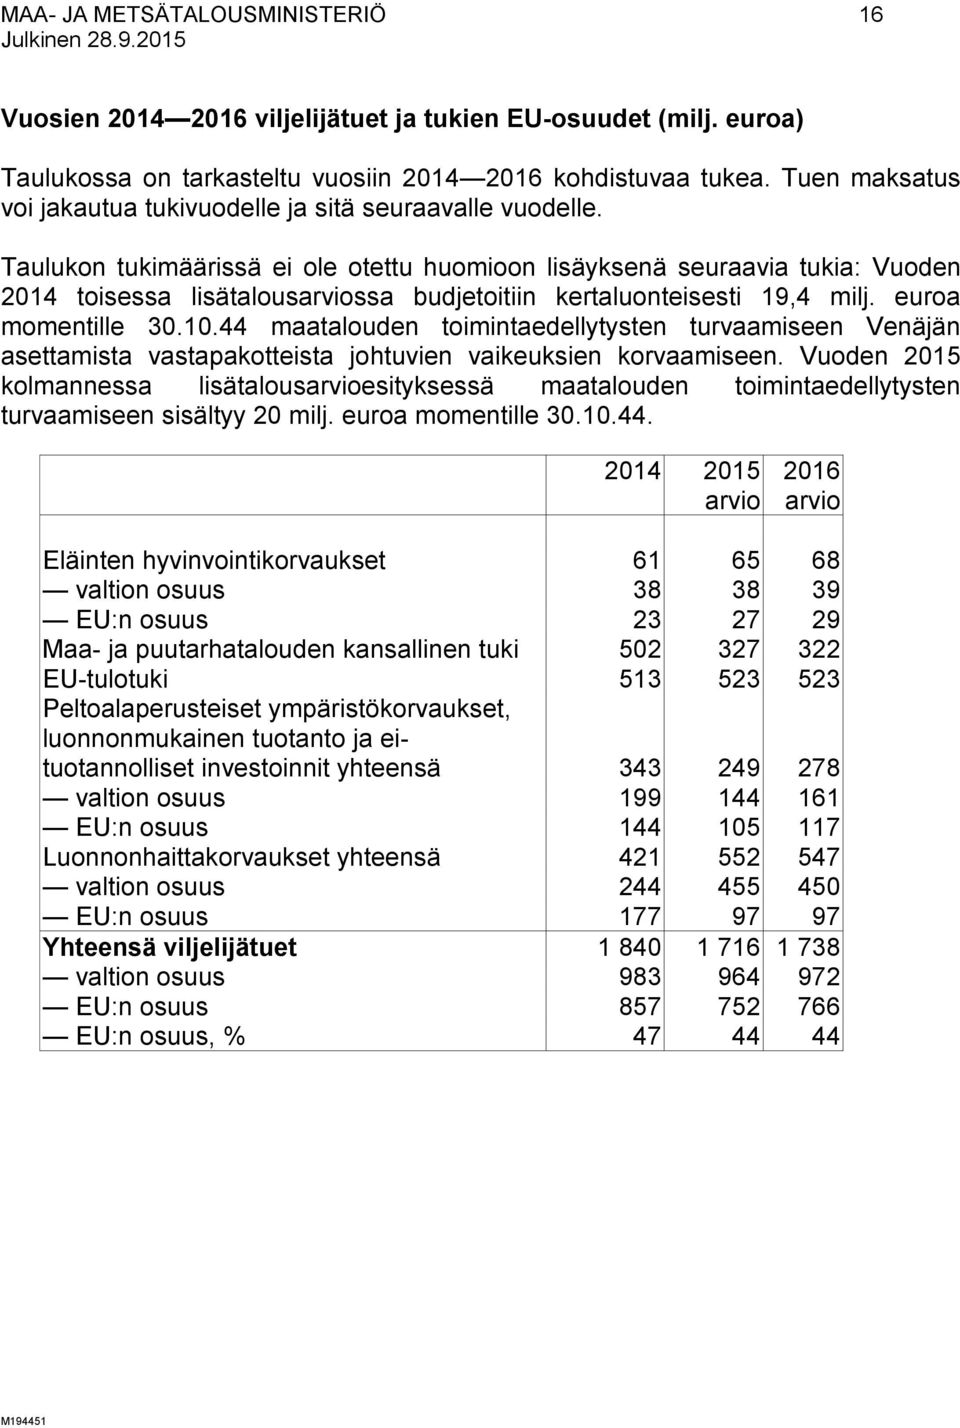 Taulukon tukimäärissä ei ole otettu huomioon lisäyksenä seuraavia tukia: Vuoden 2014 toisessa lisätalousarviossa budjetoitiin kertaluonteisesti 19,4 milj. euroa momentille 30.10.